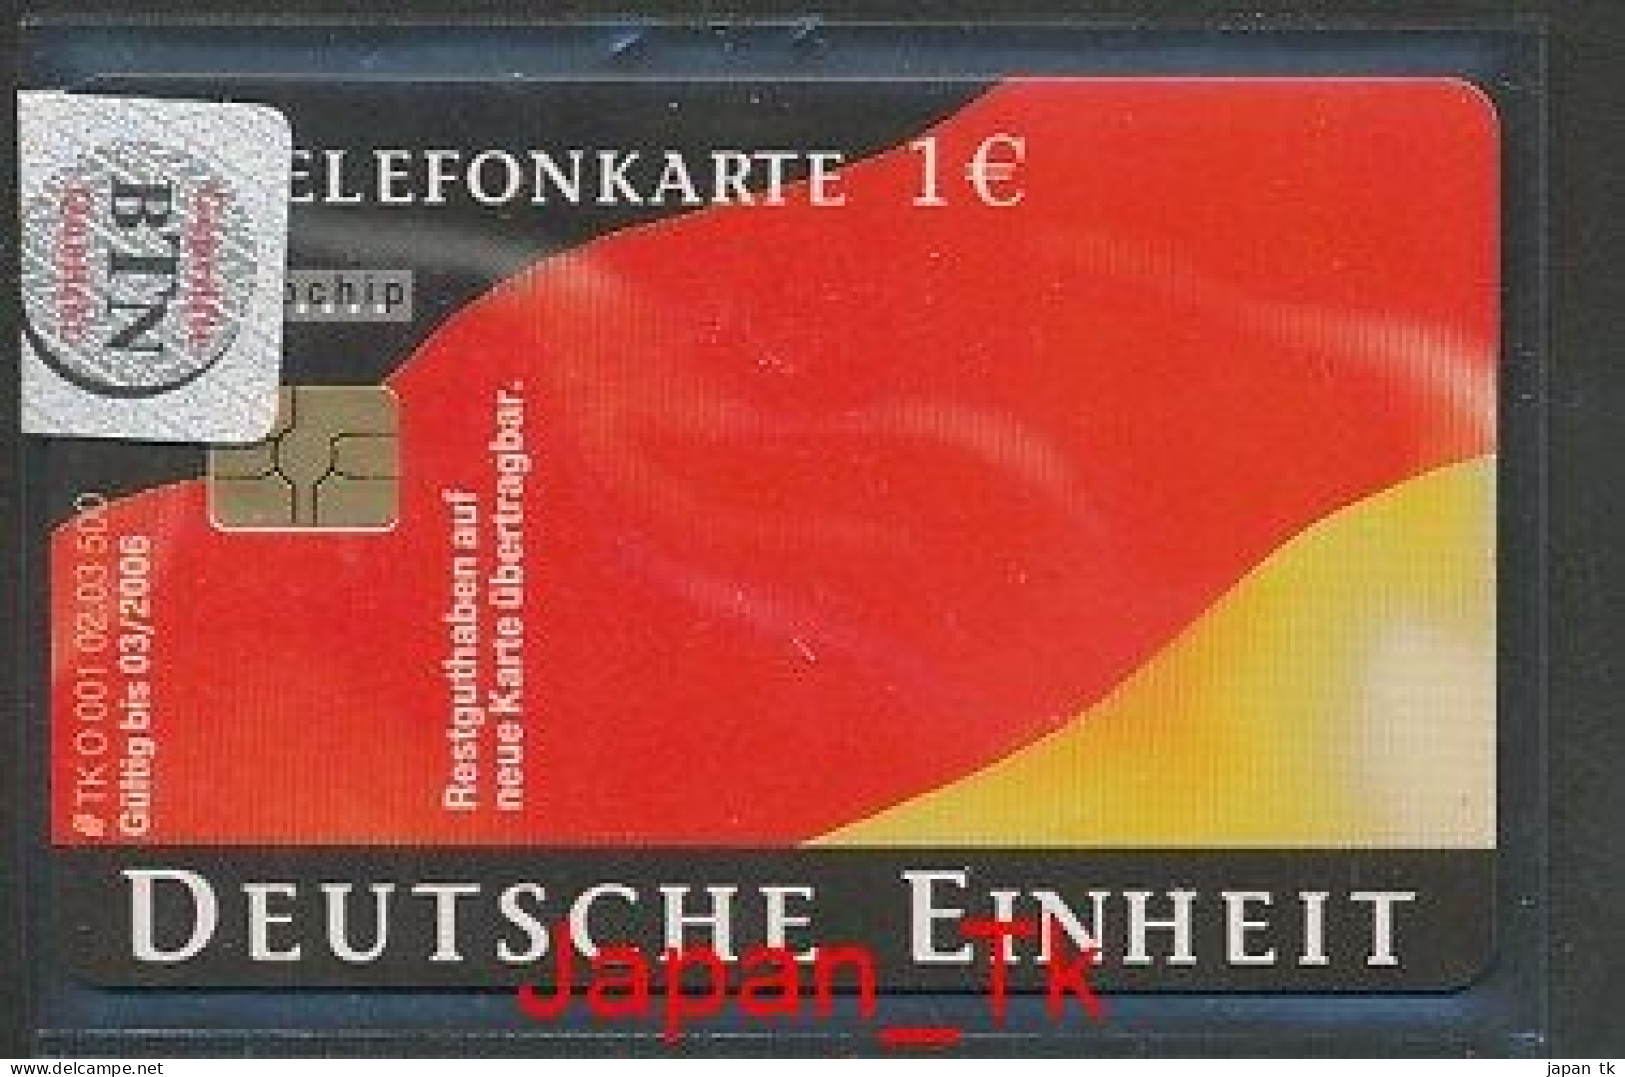 GERMANY O 001 2003 Deutsche Einheit  - Aufl 500 - Siehe Scan - O-Series: Kundenserie Vom Sammlerservice Ausgeschlossen